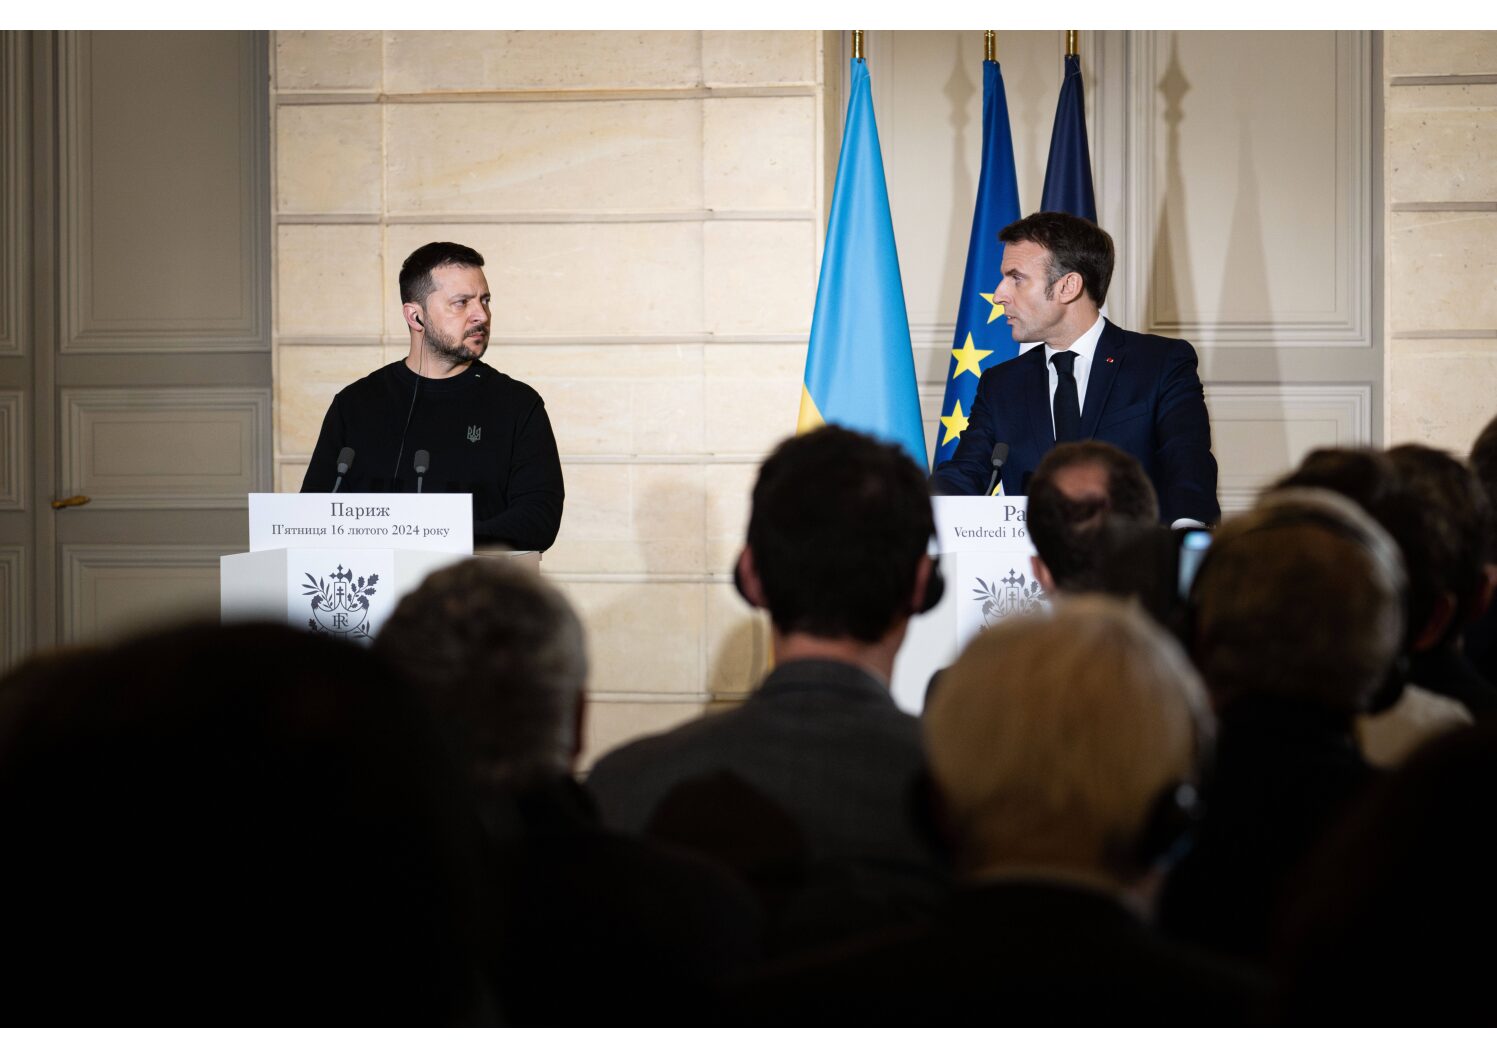 Le président français Emmanuel Macron, et son homologue ukrainien Volodymyr Zelenskyy participent à une conférence de presse, le vendredi 16 février 2024 au palais de l'Élysée à Paris. SIPA_01146390_000027